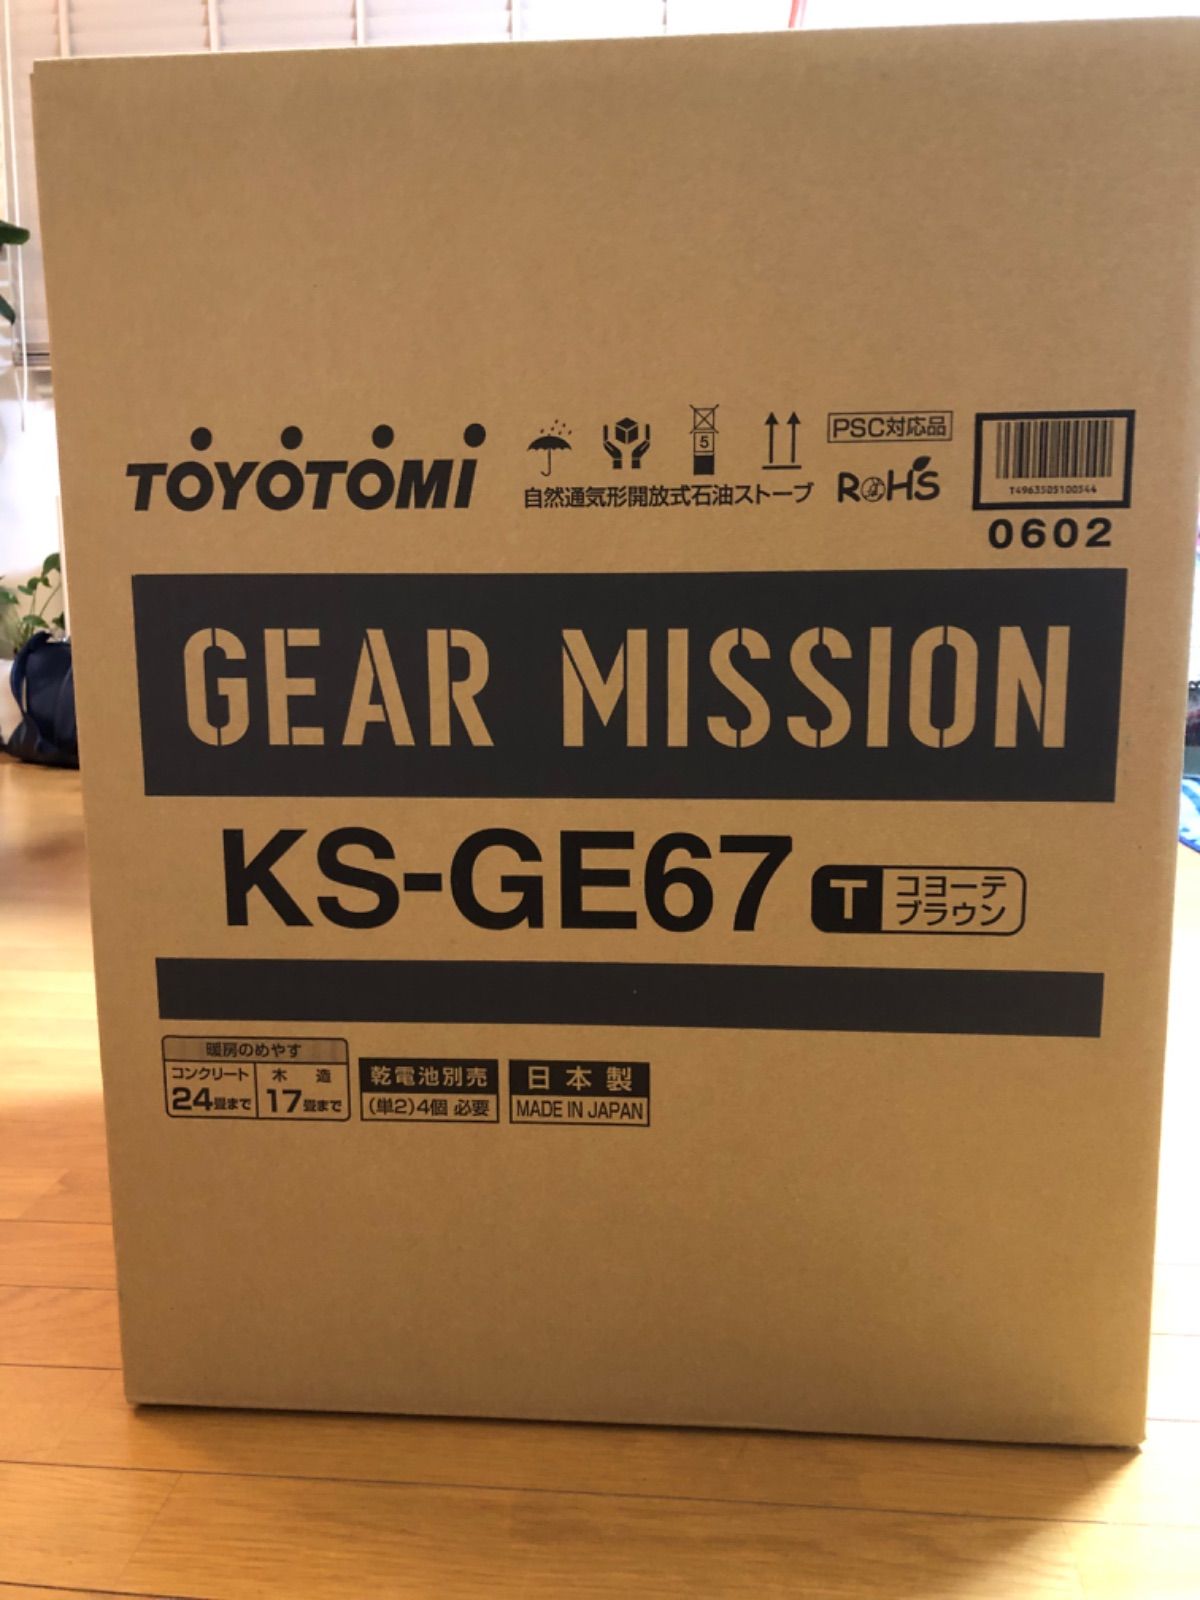 トヨトミ ギアミッション KS-GE67(T) コヨーテブラウン 2021年版-